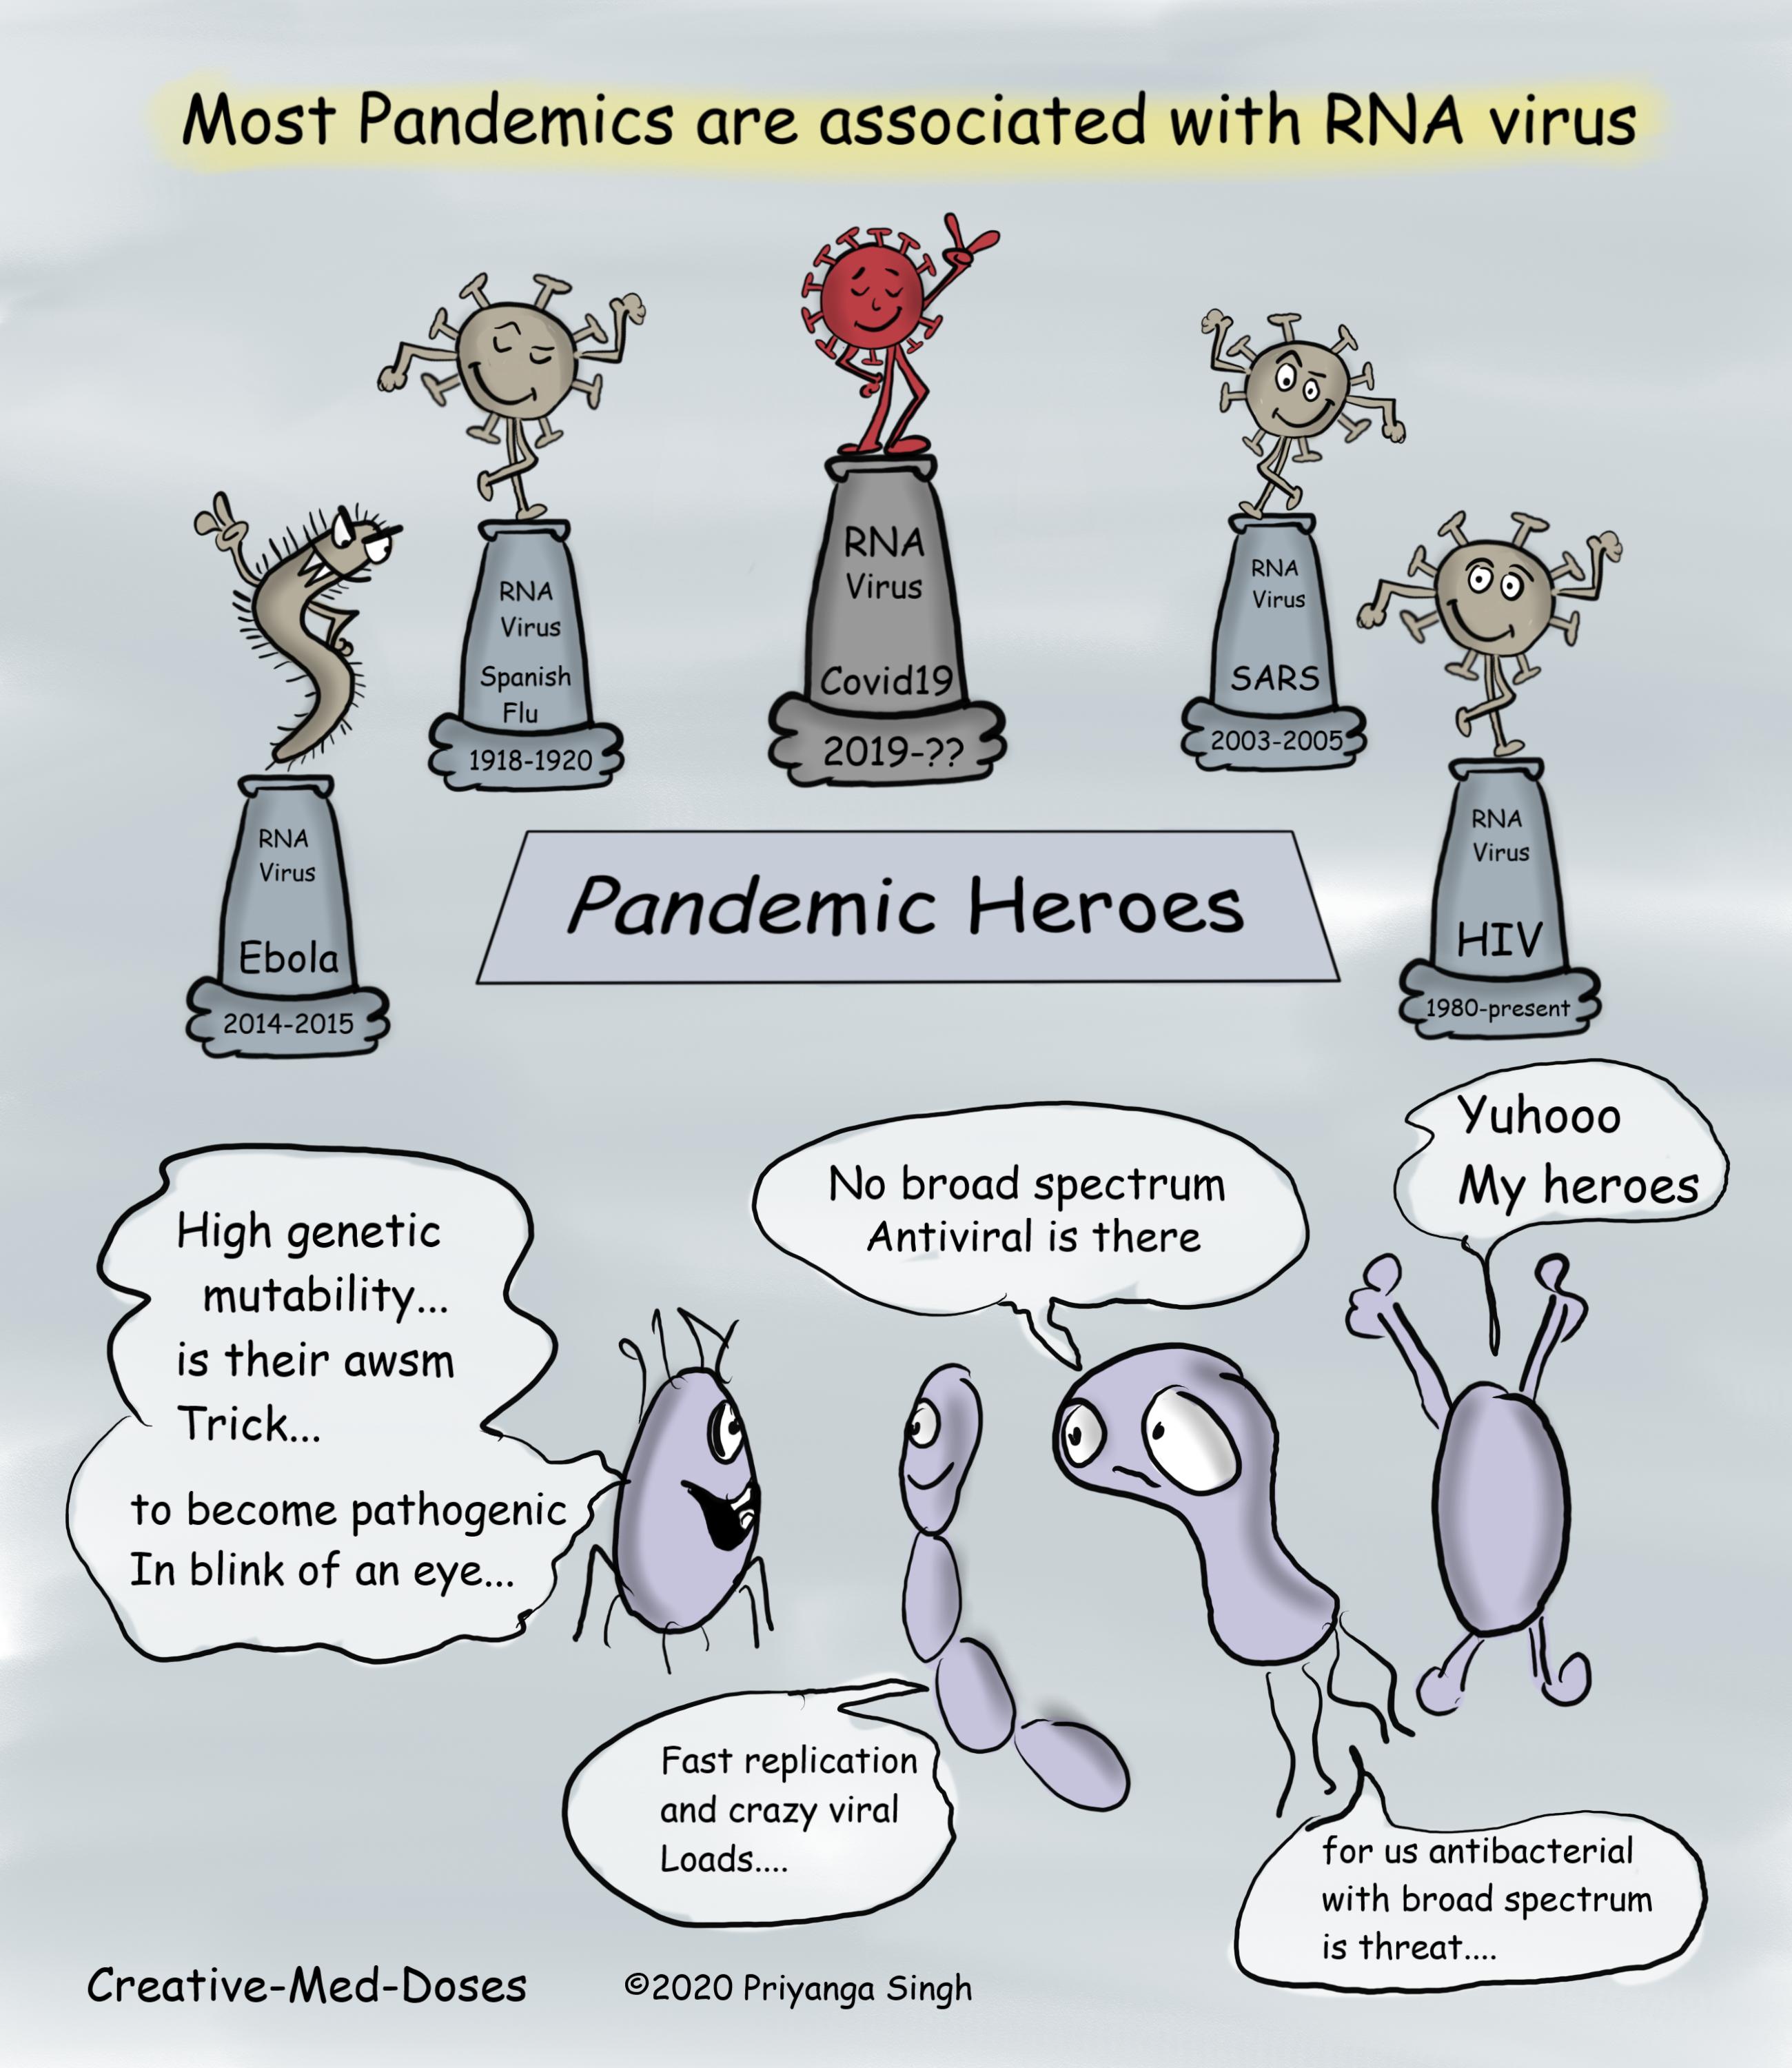 RNA virus hero of pandemic story jpg.jpg